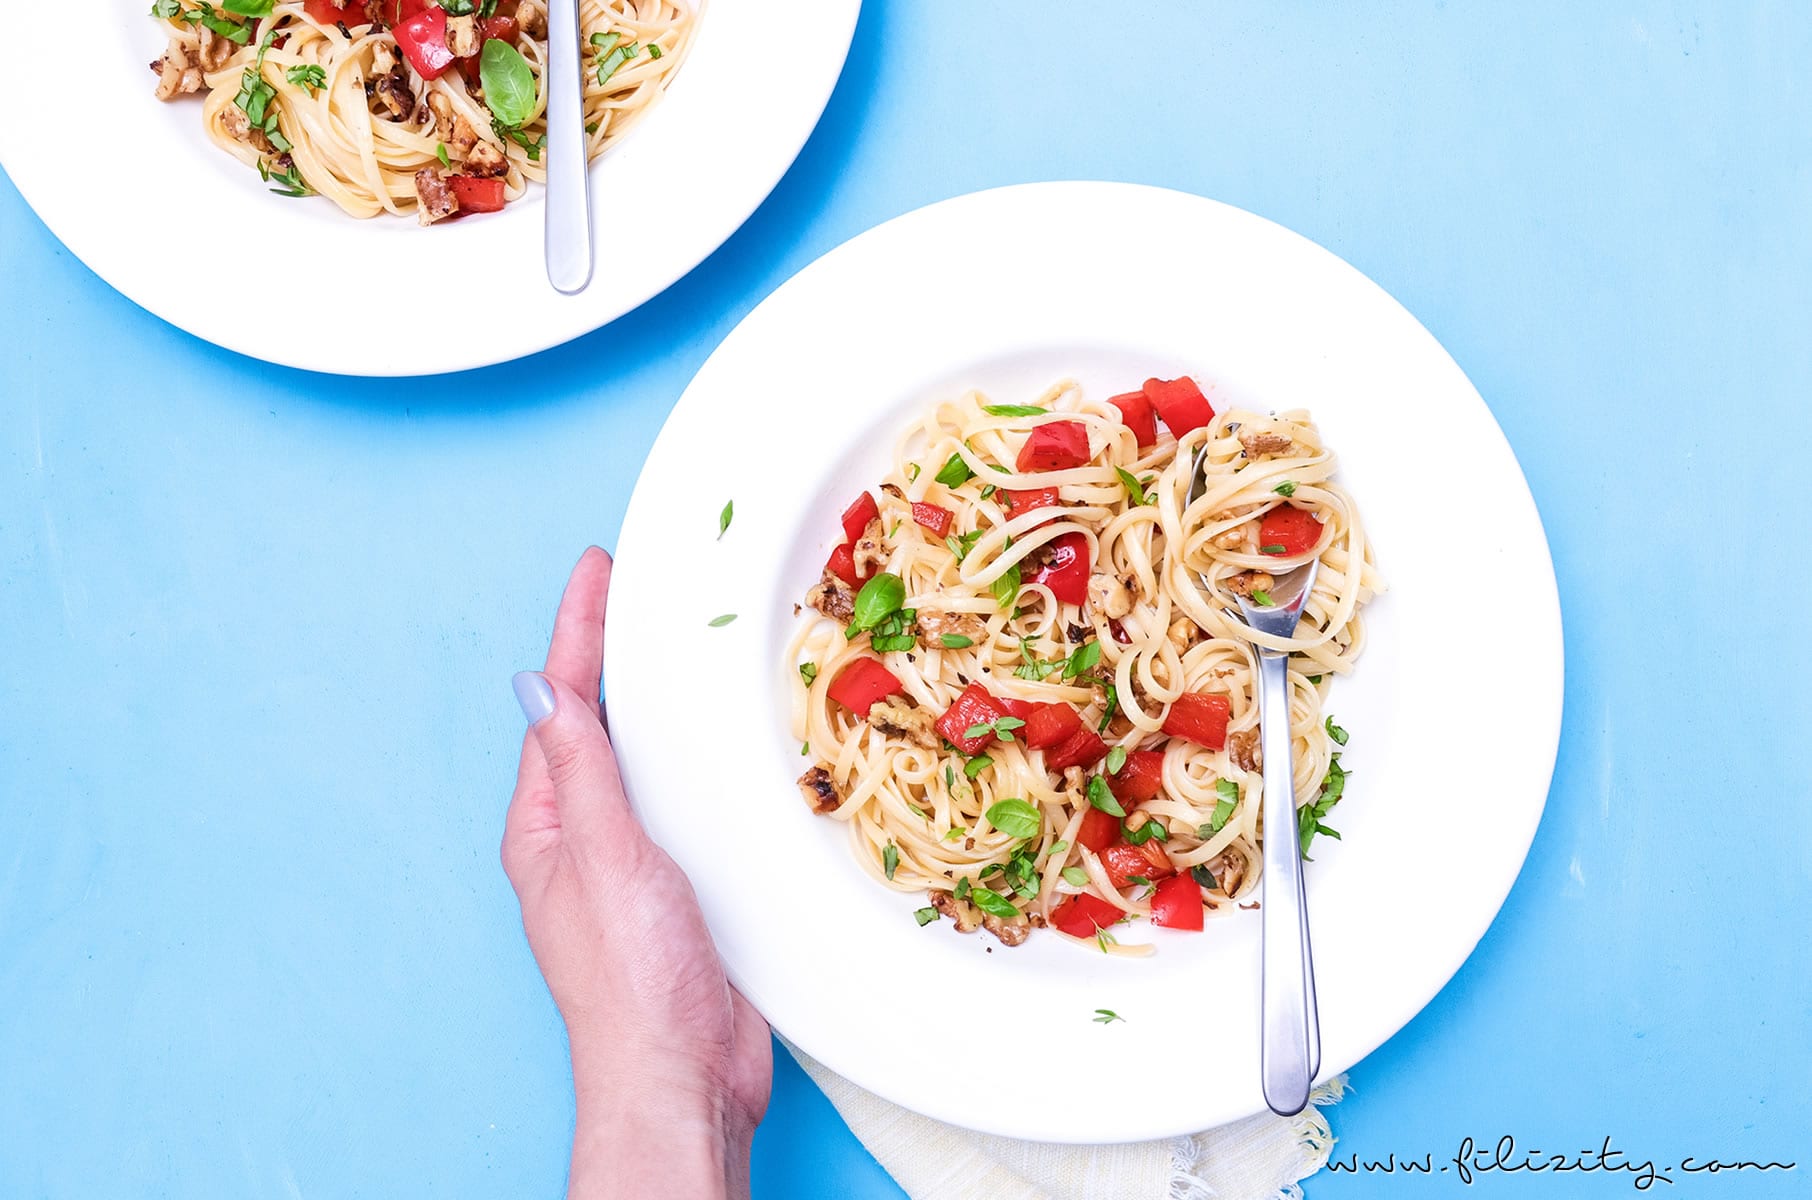 Linguine mit Paprika und Walnüssen - Einfaches und leckeres Pasta-Rezept ohne Soße | Nudeln kochen kann jeder! | Filizity.com | Food-Blog aus dem Rheinland #pasta #sommer